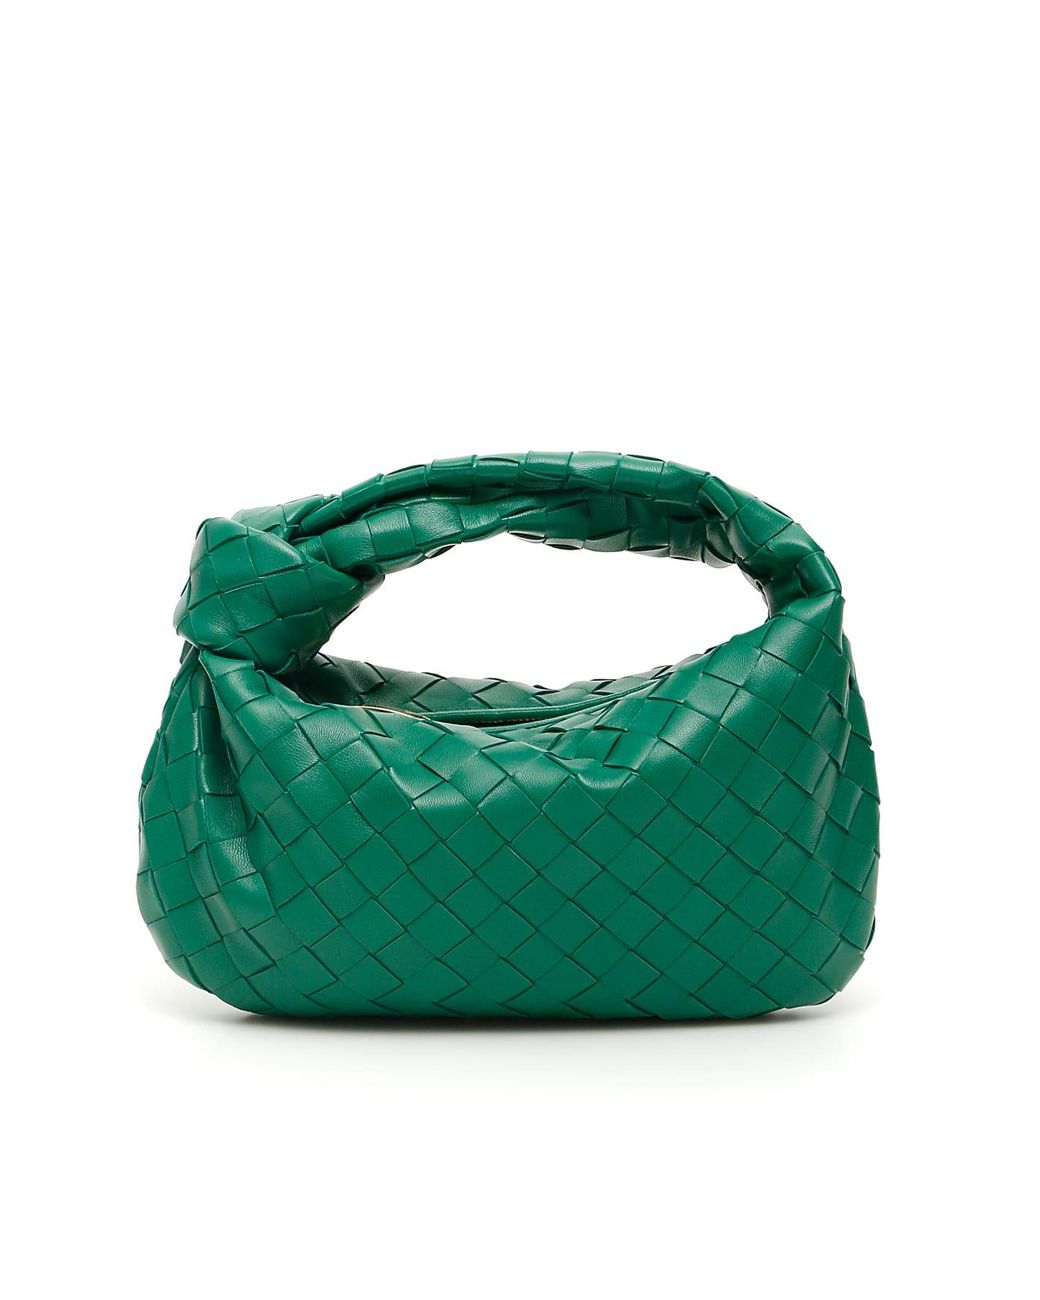 Bottega Veneta Bv Jodie Mini Leather Tote in Green | Lyst